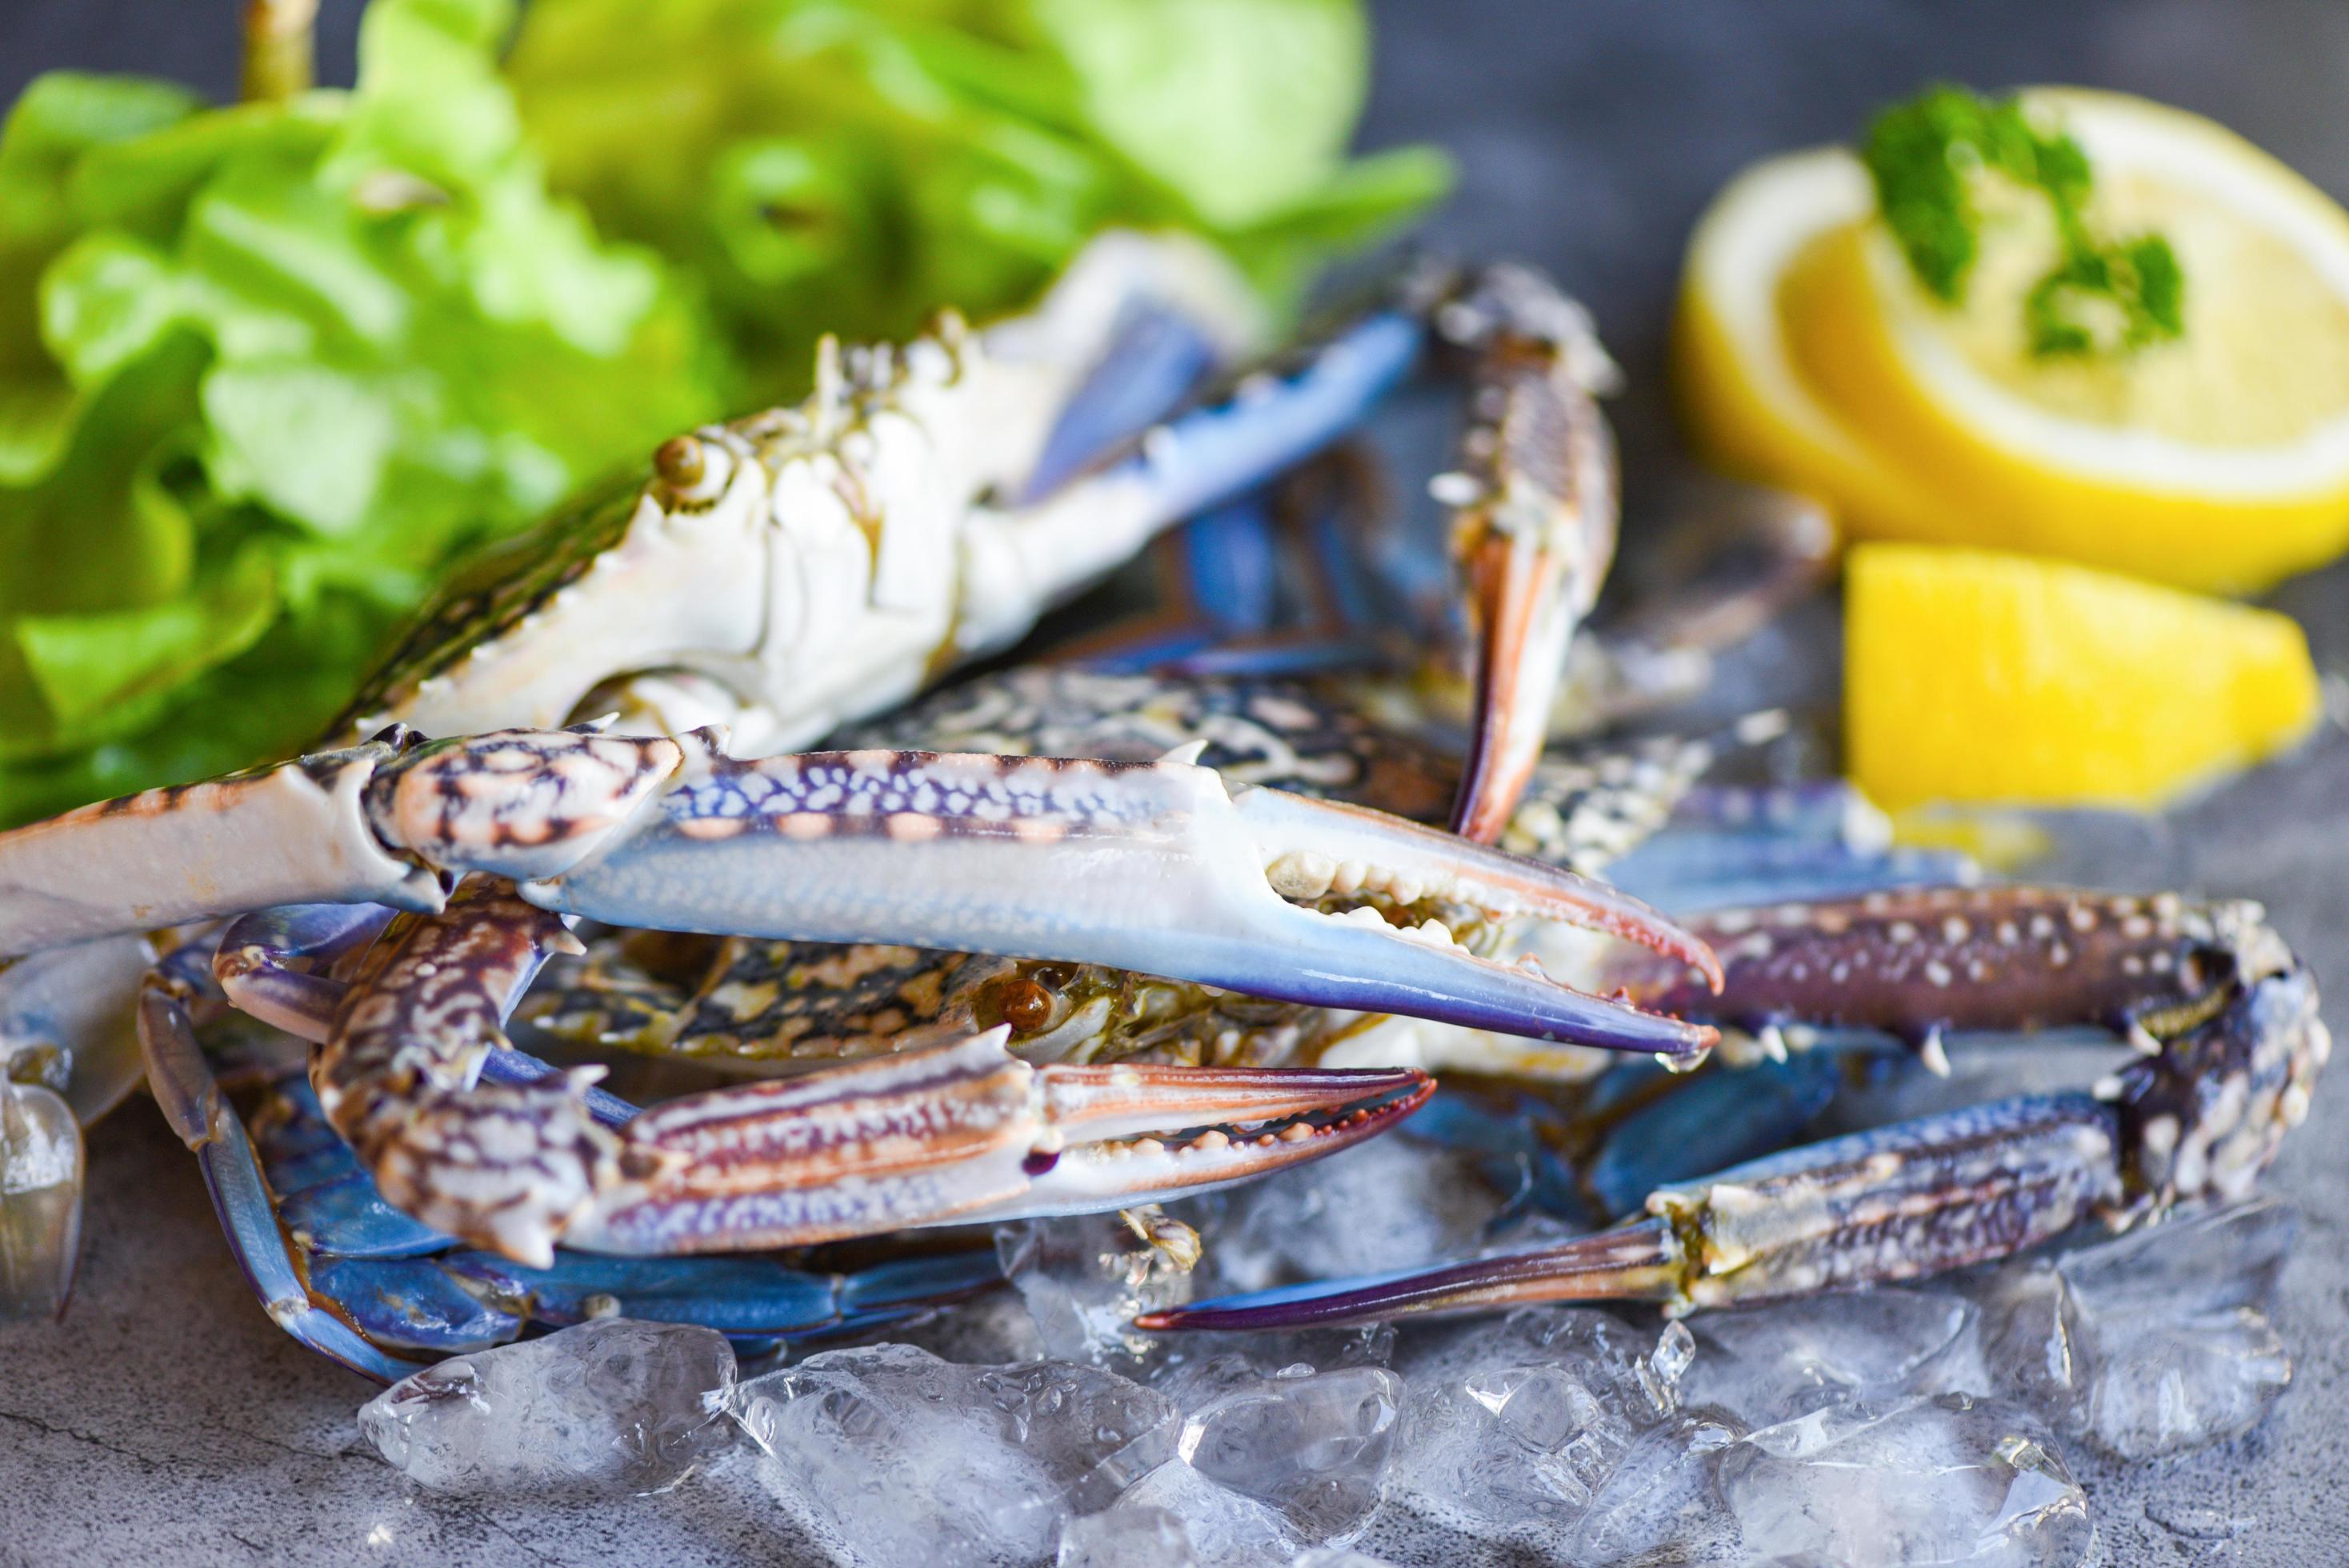 verse krab voor gekookt voedsel in restaurant of vismarkt rauwe krab op ijs met kruiden citroen en salade sla op de donkere plaat achtergrond blauwe zwemkrab foto